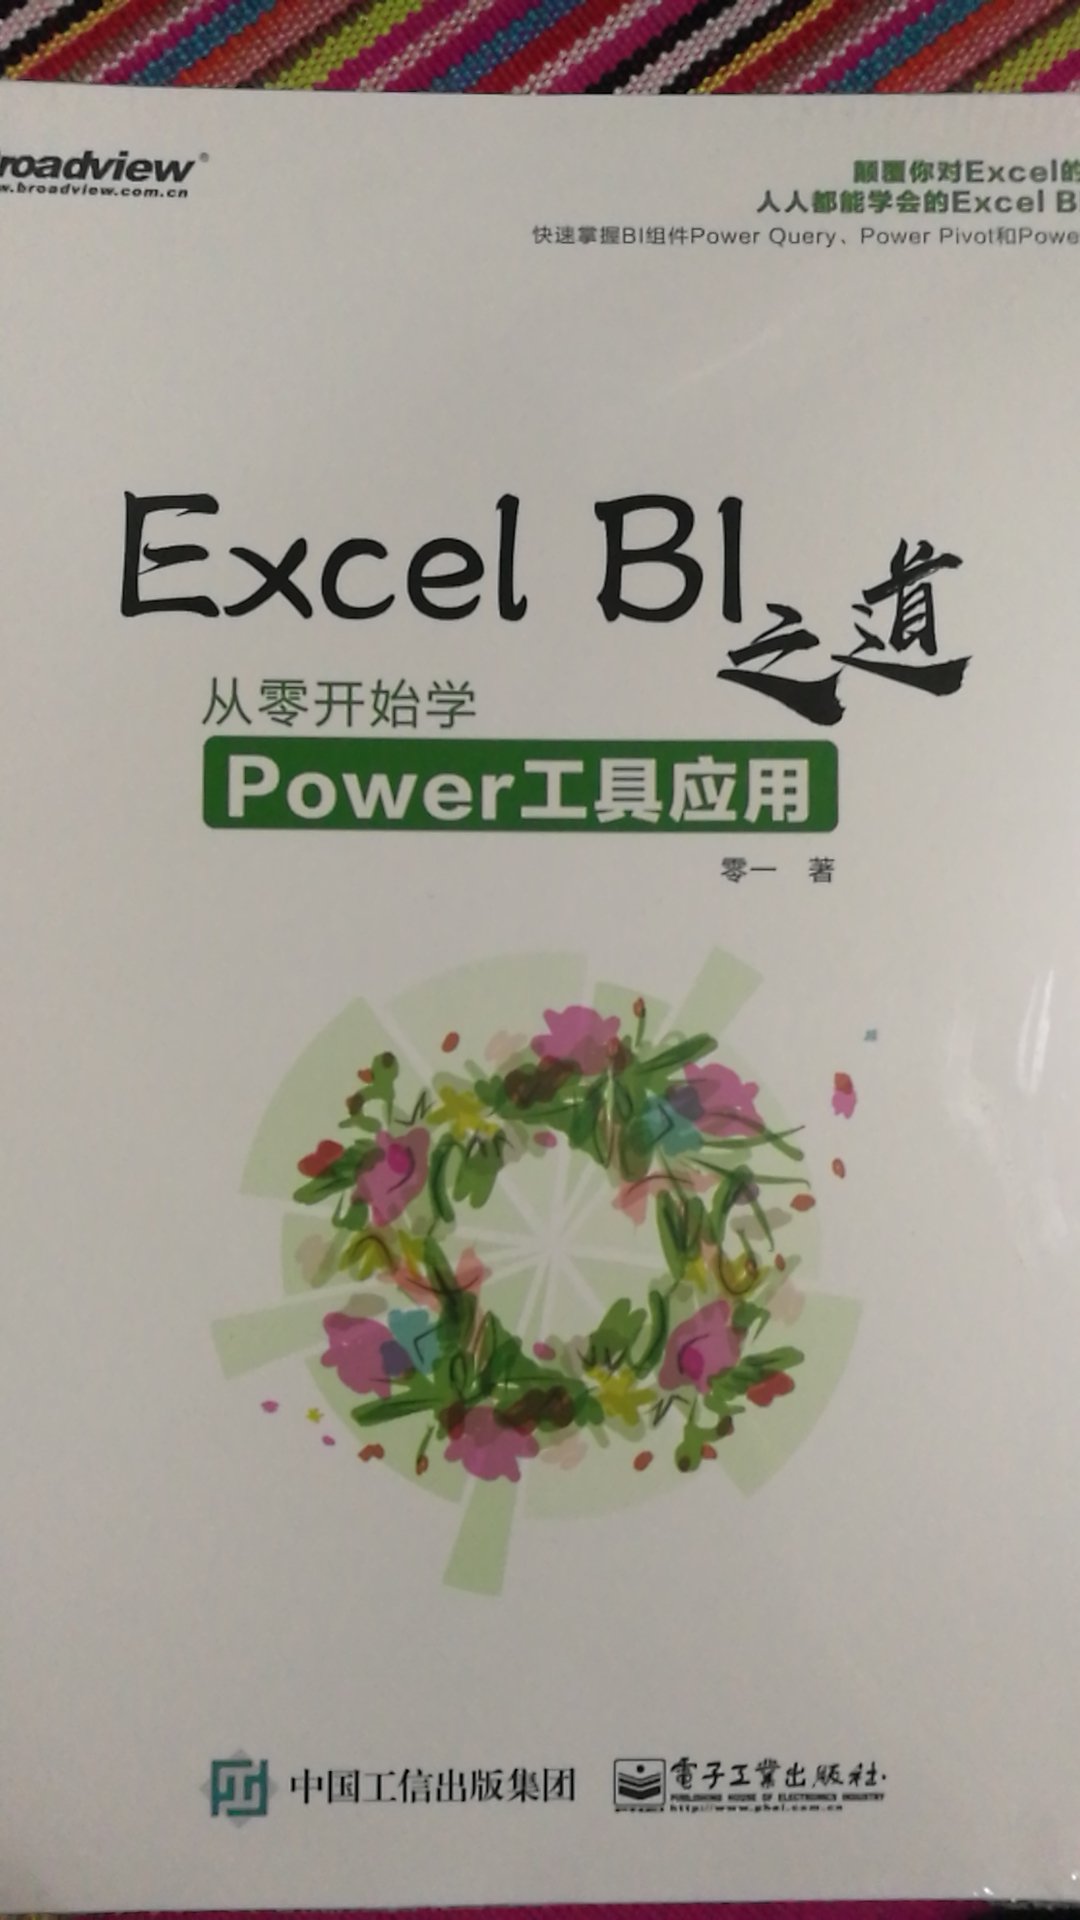 BI的功能很强大，是在一次Excel培训时了解到的，买来学习一下。送货就是快！